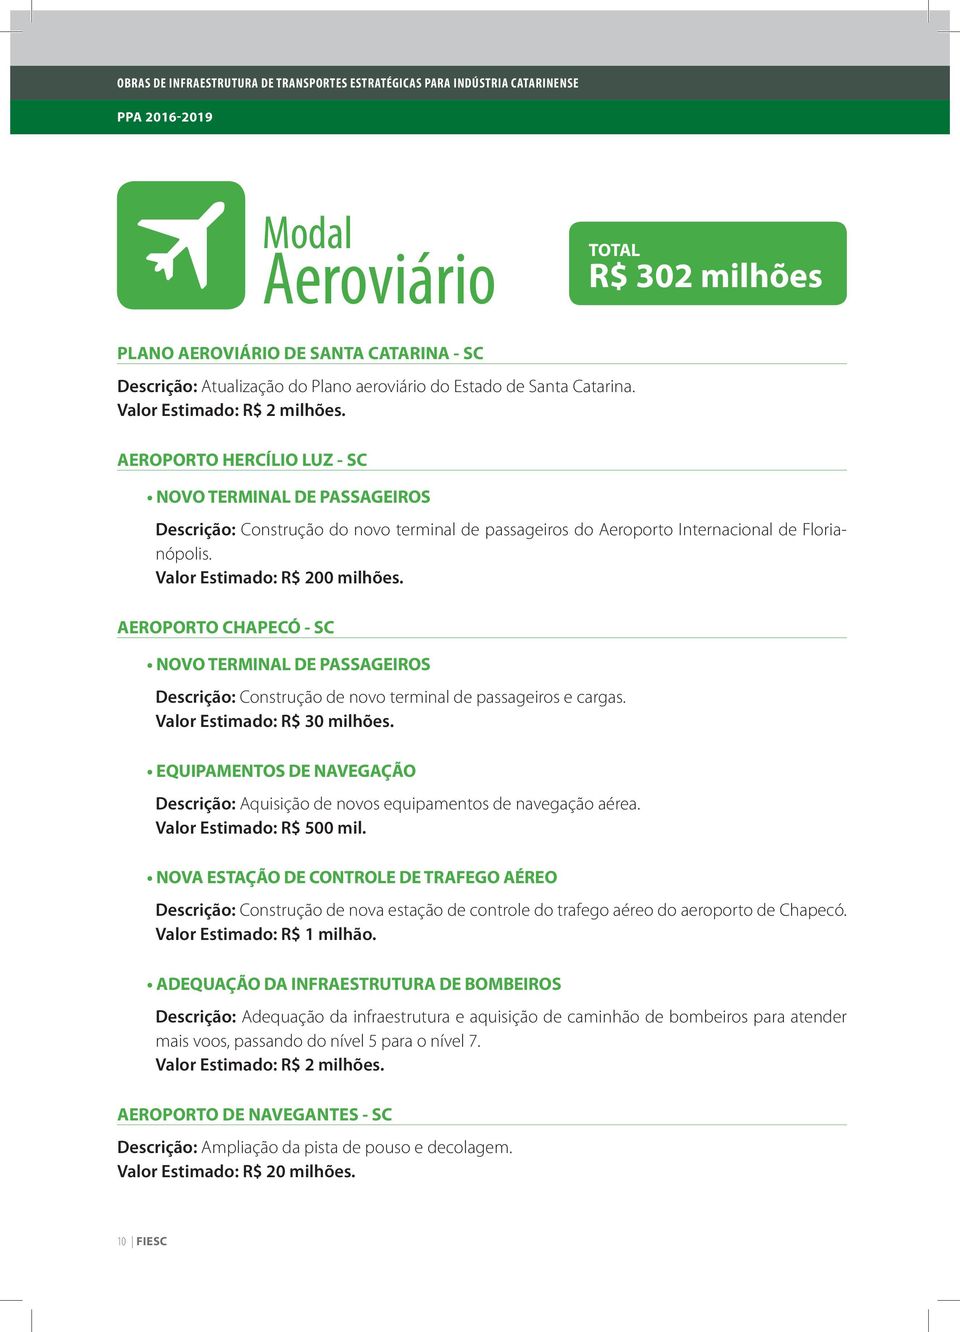 AEROPORTO CHAPECÓ - SC NOVO TERMINAL DE PASSAGEIROS Descrição: Construção de novo terminal de passageiros e cargas. Valor Estimado: R$ 30 milhões.